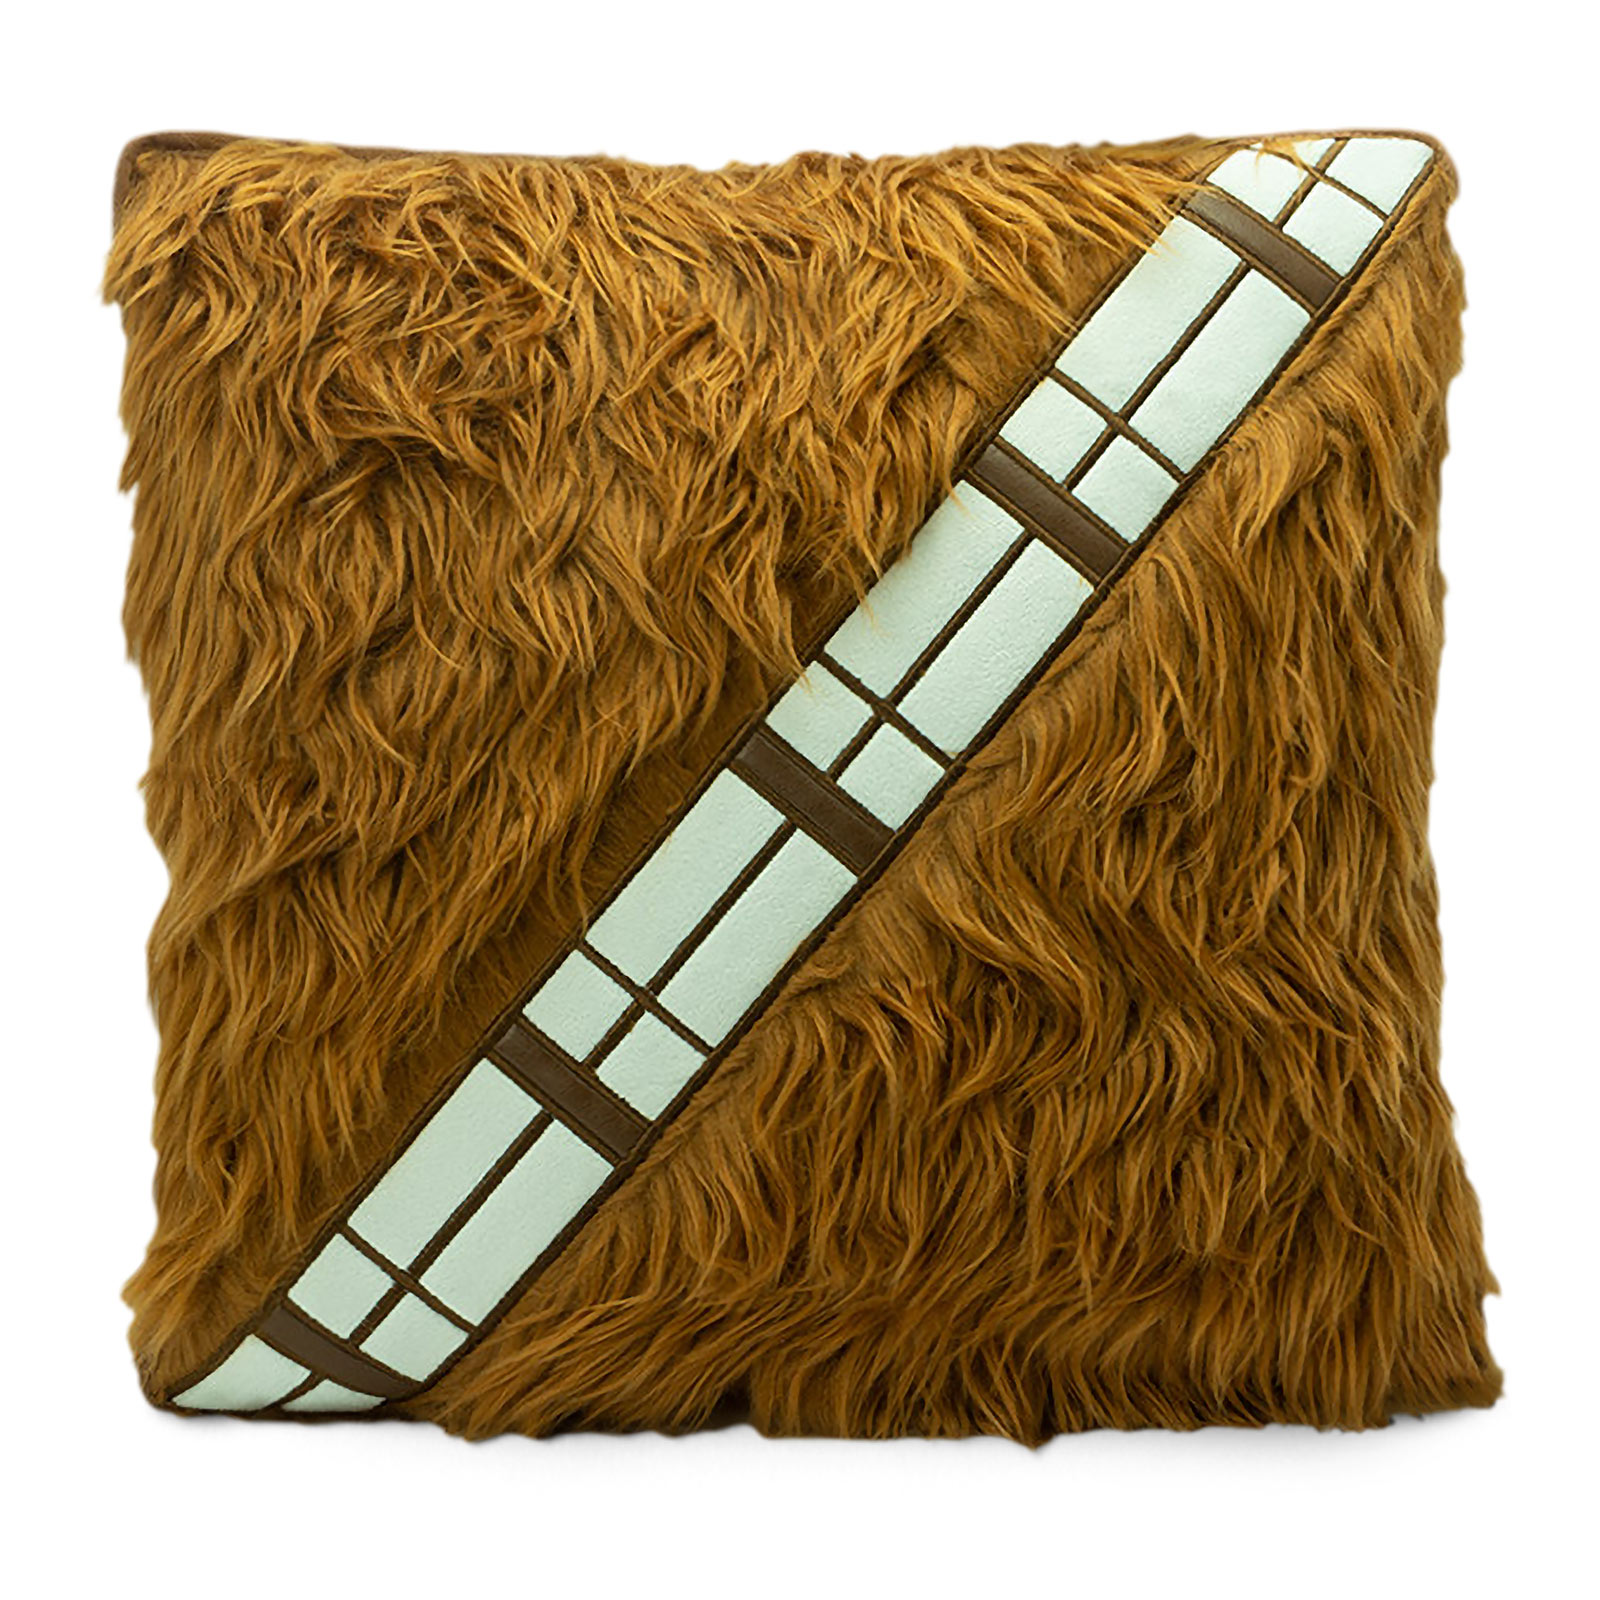 Star Wars - Chewbacca Patronengürtel Kissen